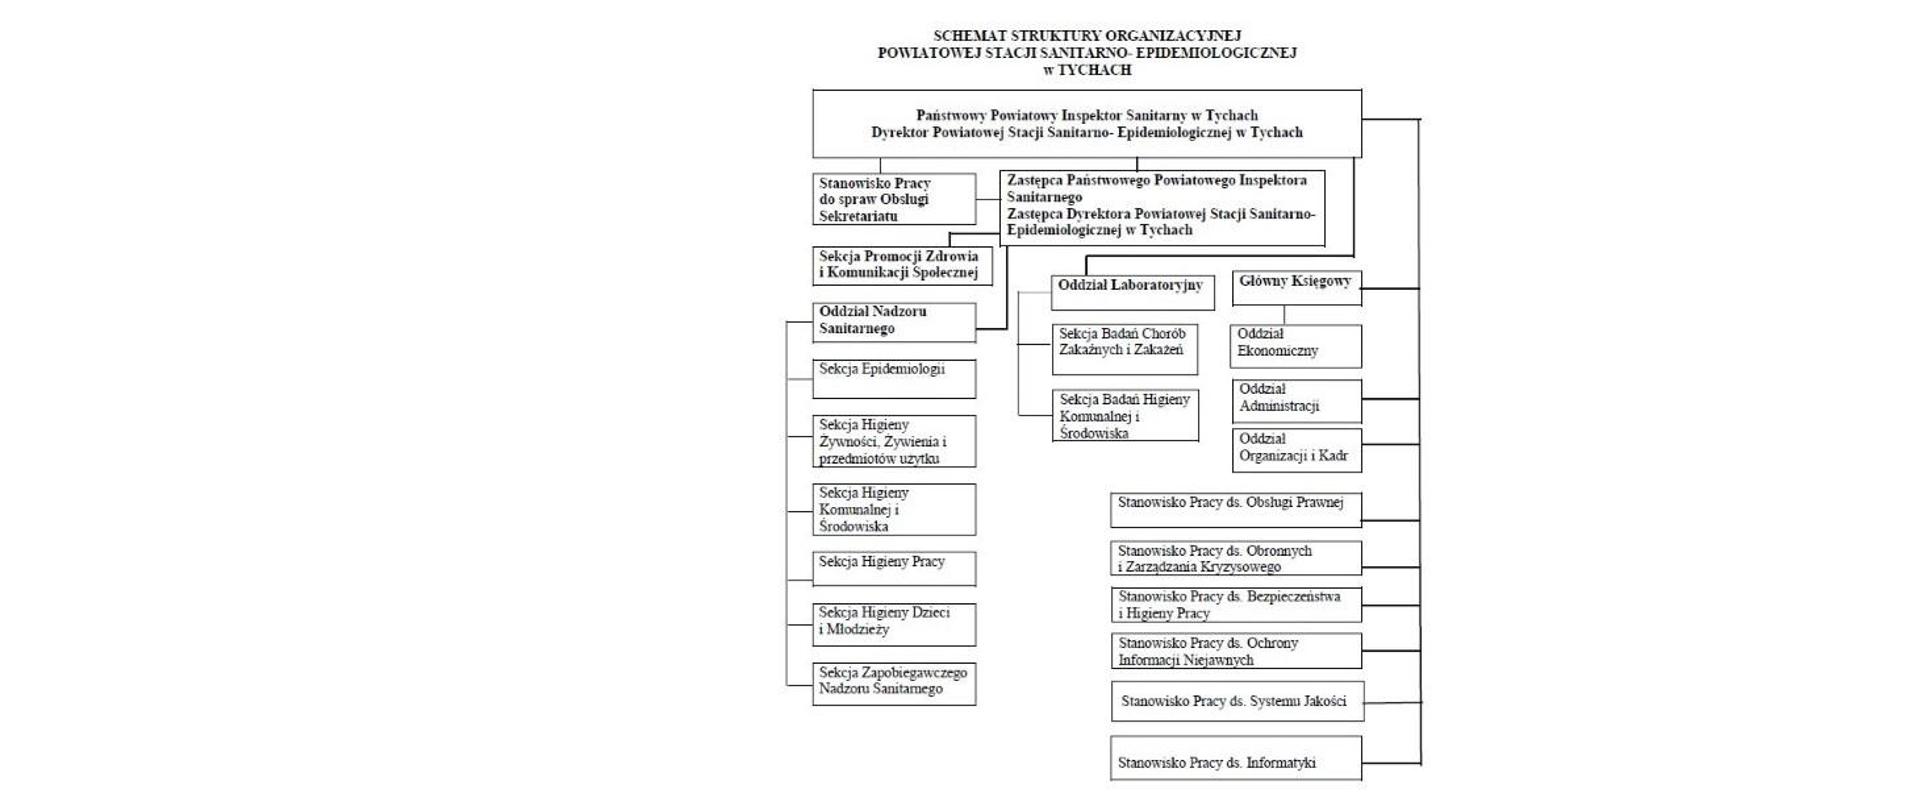 Schemat struktury organizacyjnej
Powiatowej Stacji Sanitarno-Epidemiologicznej w Tychach